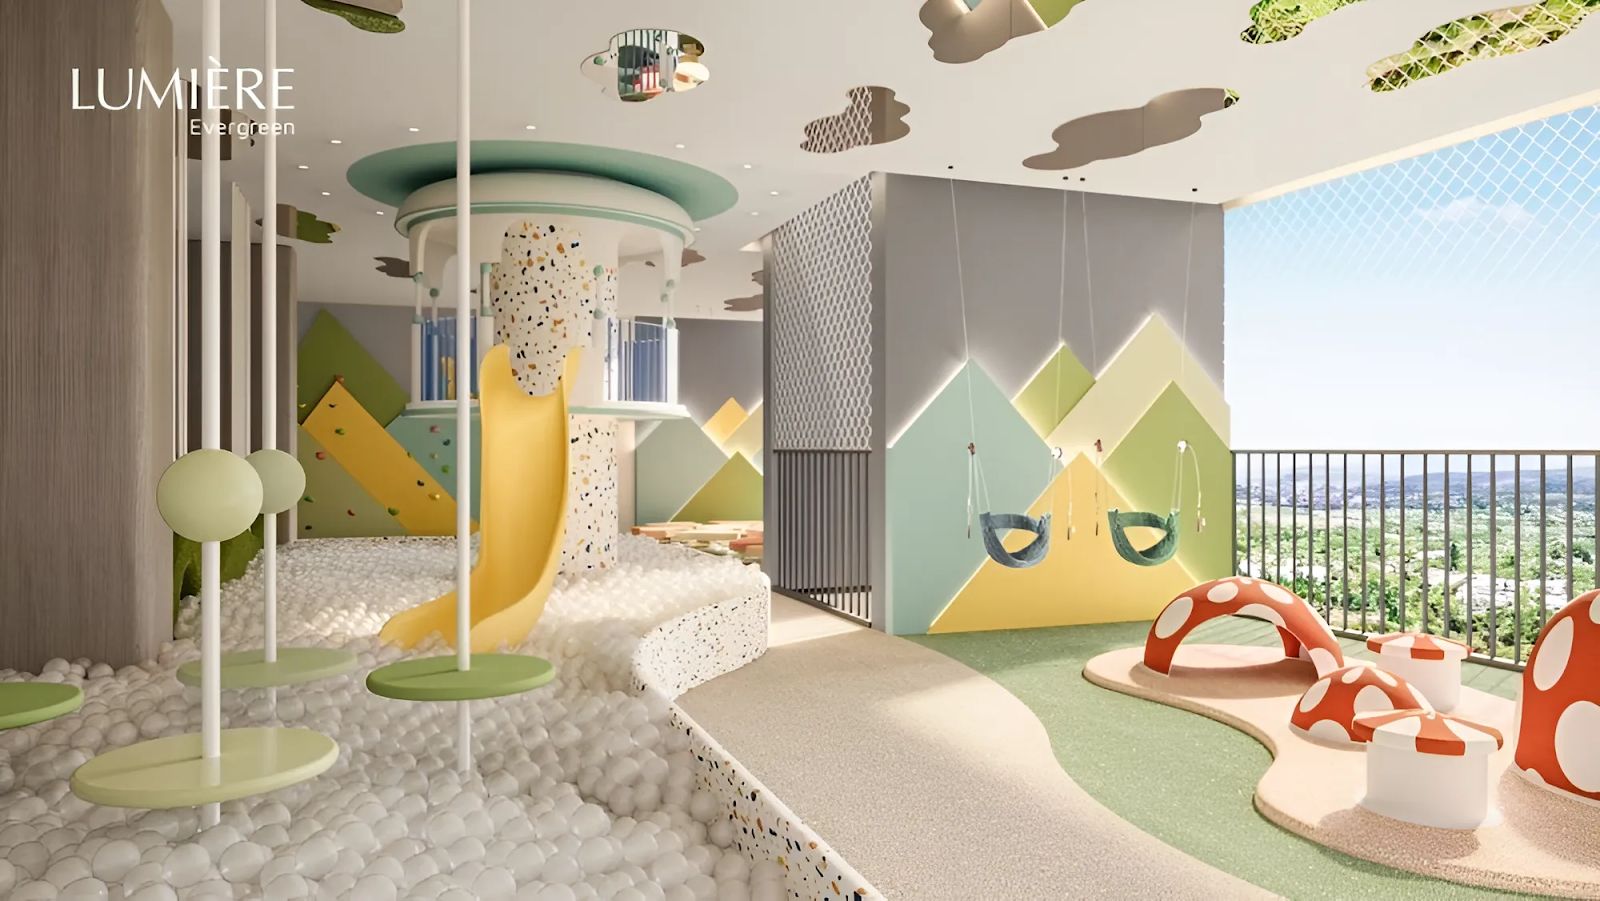 Khu vui chơi trẻ em dự án Lumière Evergreen nằm tại tầng bao nhiêu?